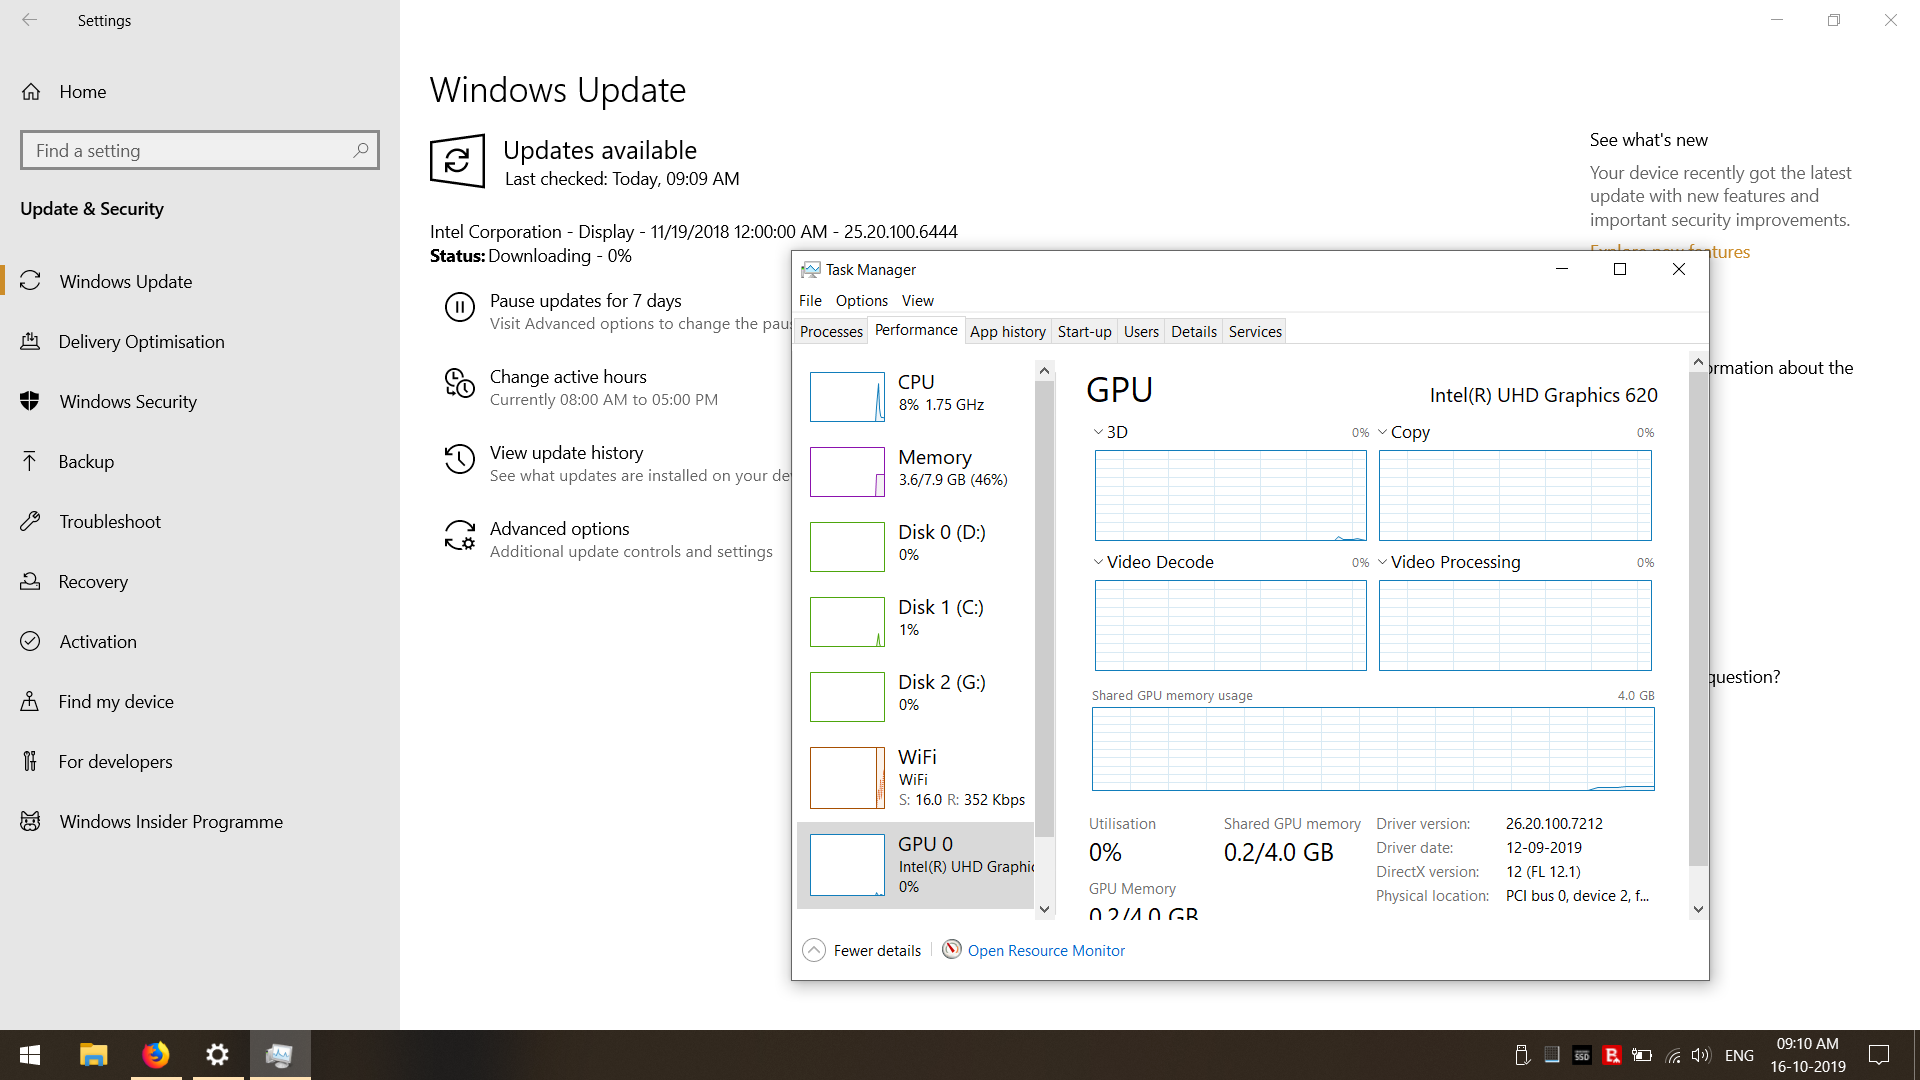 Windows forcing old driver via update f620ef85-499c-45d6-8557-275da353375e?upload=true.png